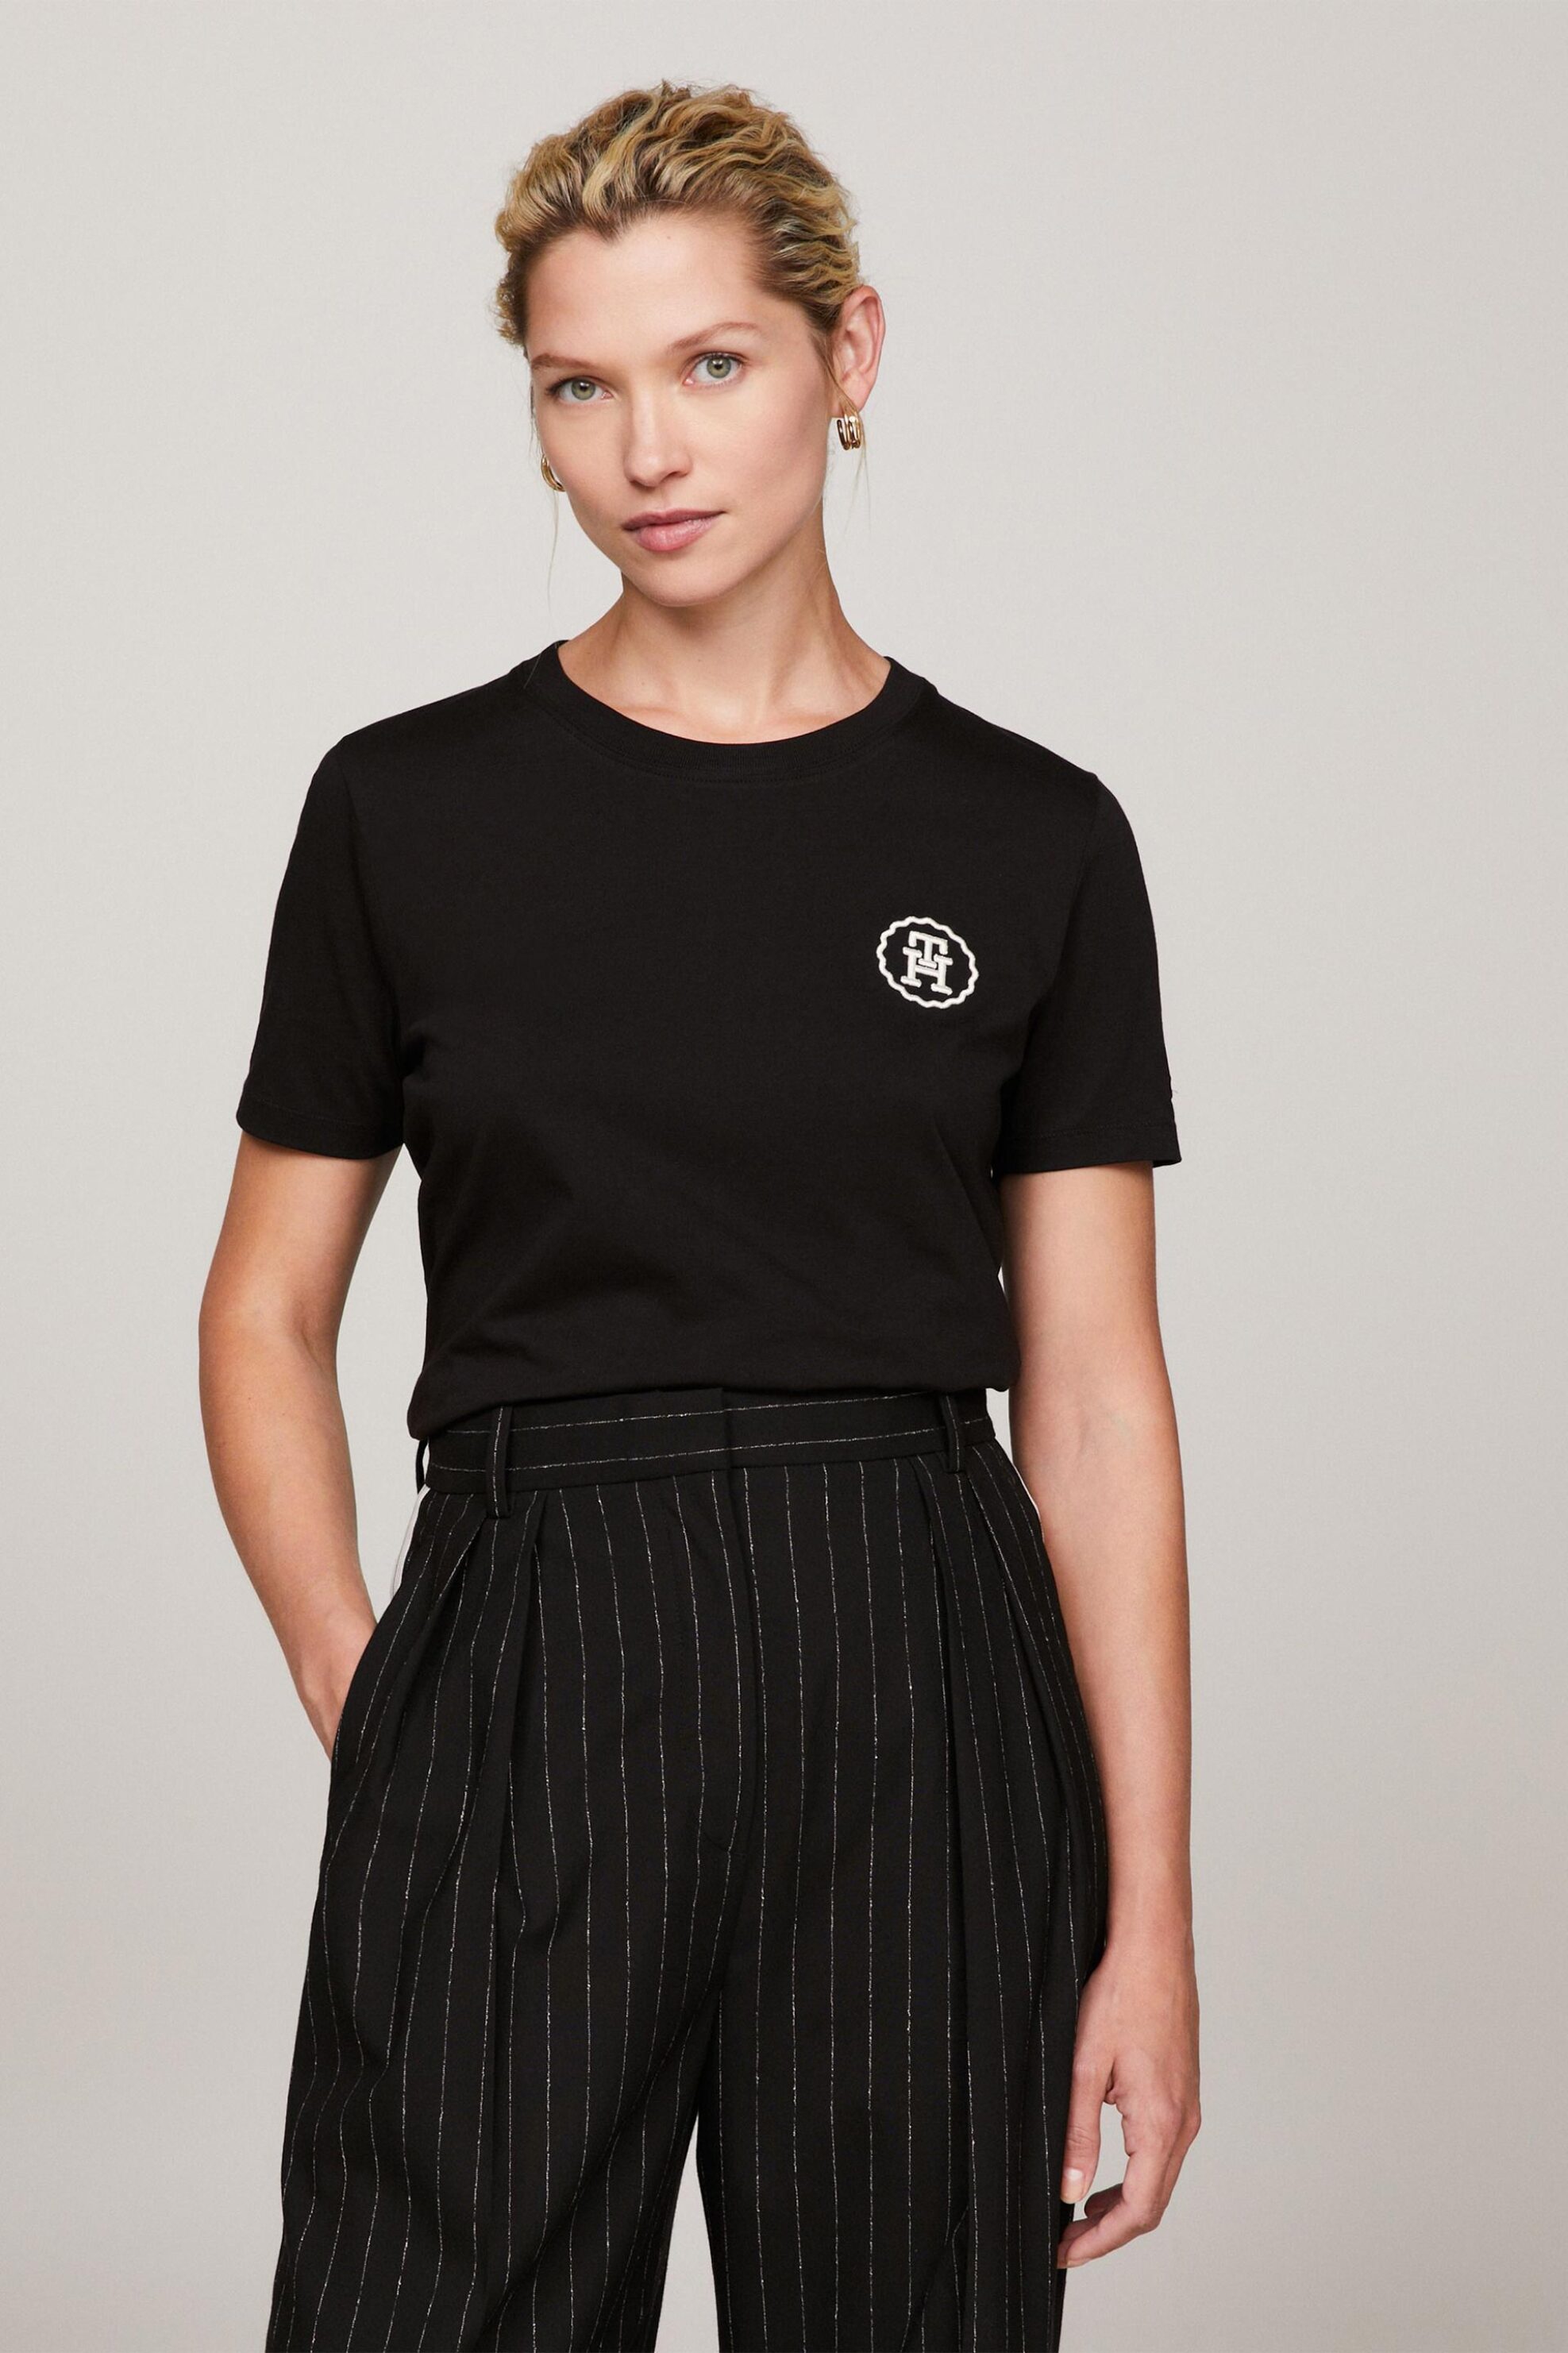 Γυναίκα > ΡΟΥΧΑ > Tops > T-Shirts Tommy Hilfiger γυναικείο T-shirt μονόχρωμο με κεντημένο monogram logo Regular Fit - WW0WW40273 Μαύρο